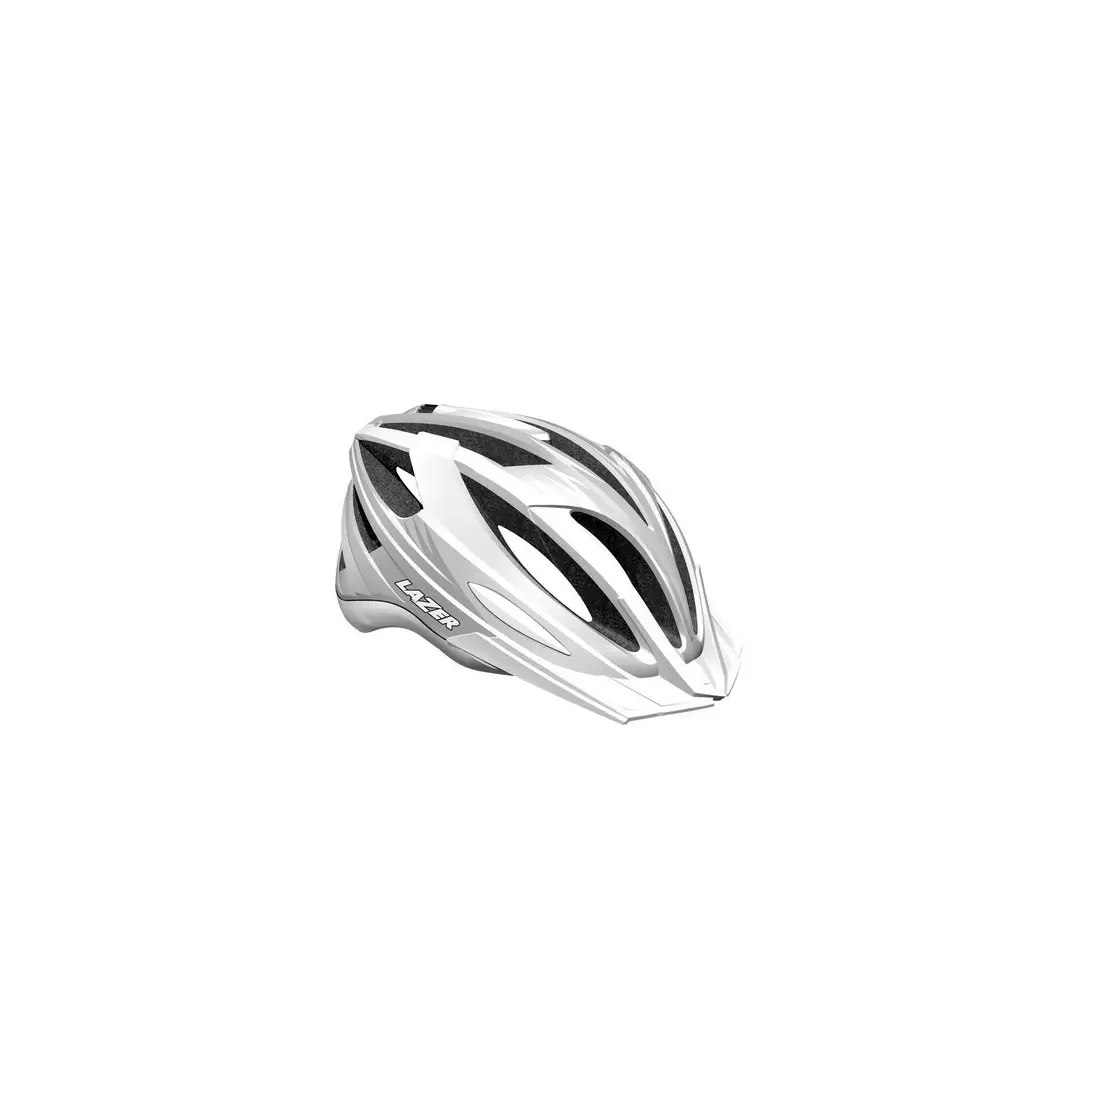 LAZER - MTB cyklistická přilba CLASH, barva: bílá stříbrná